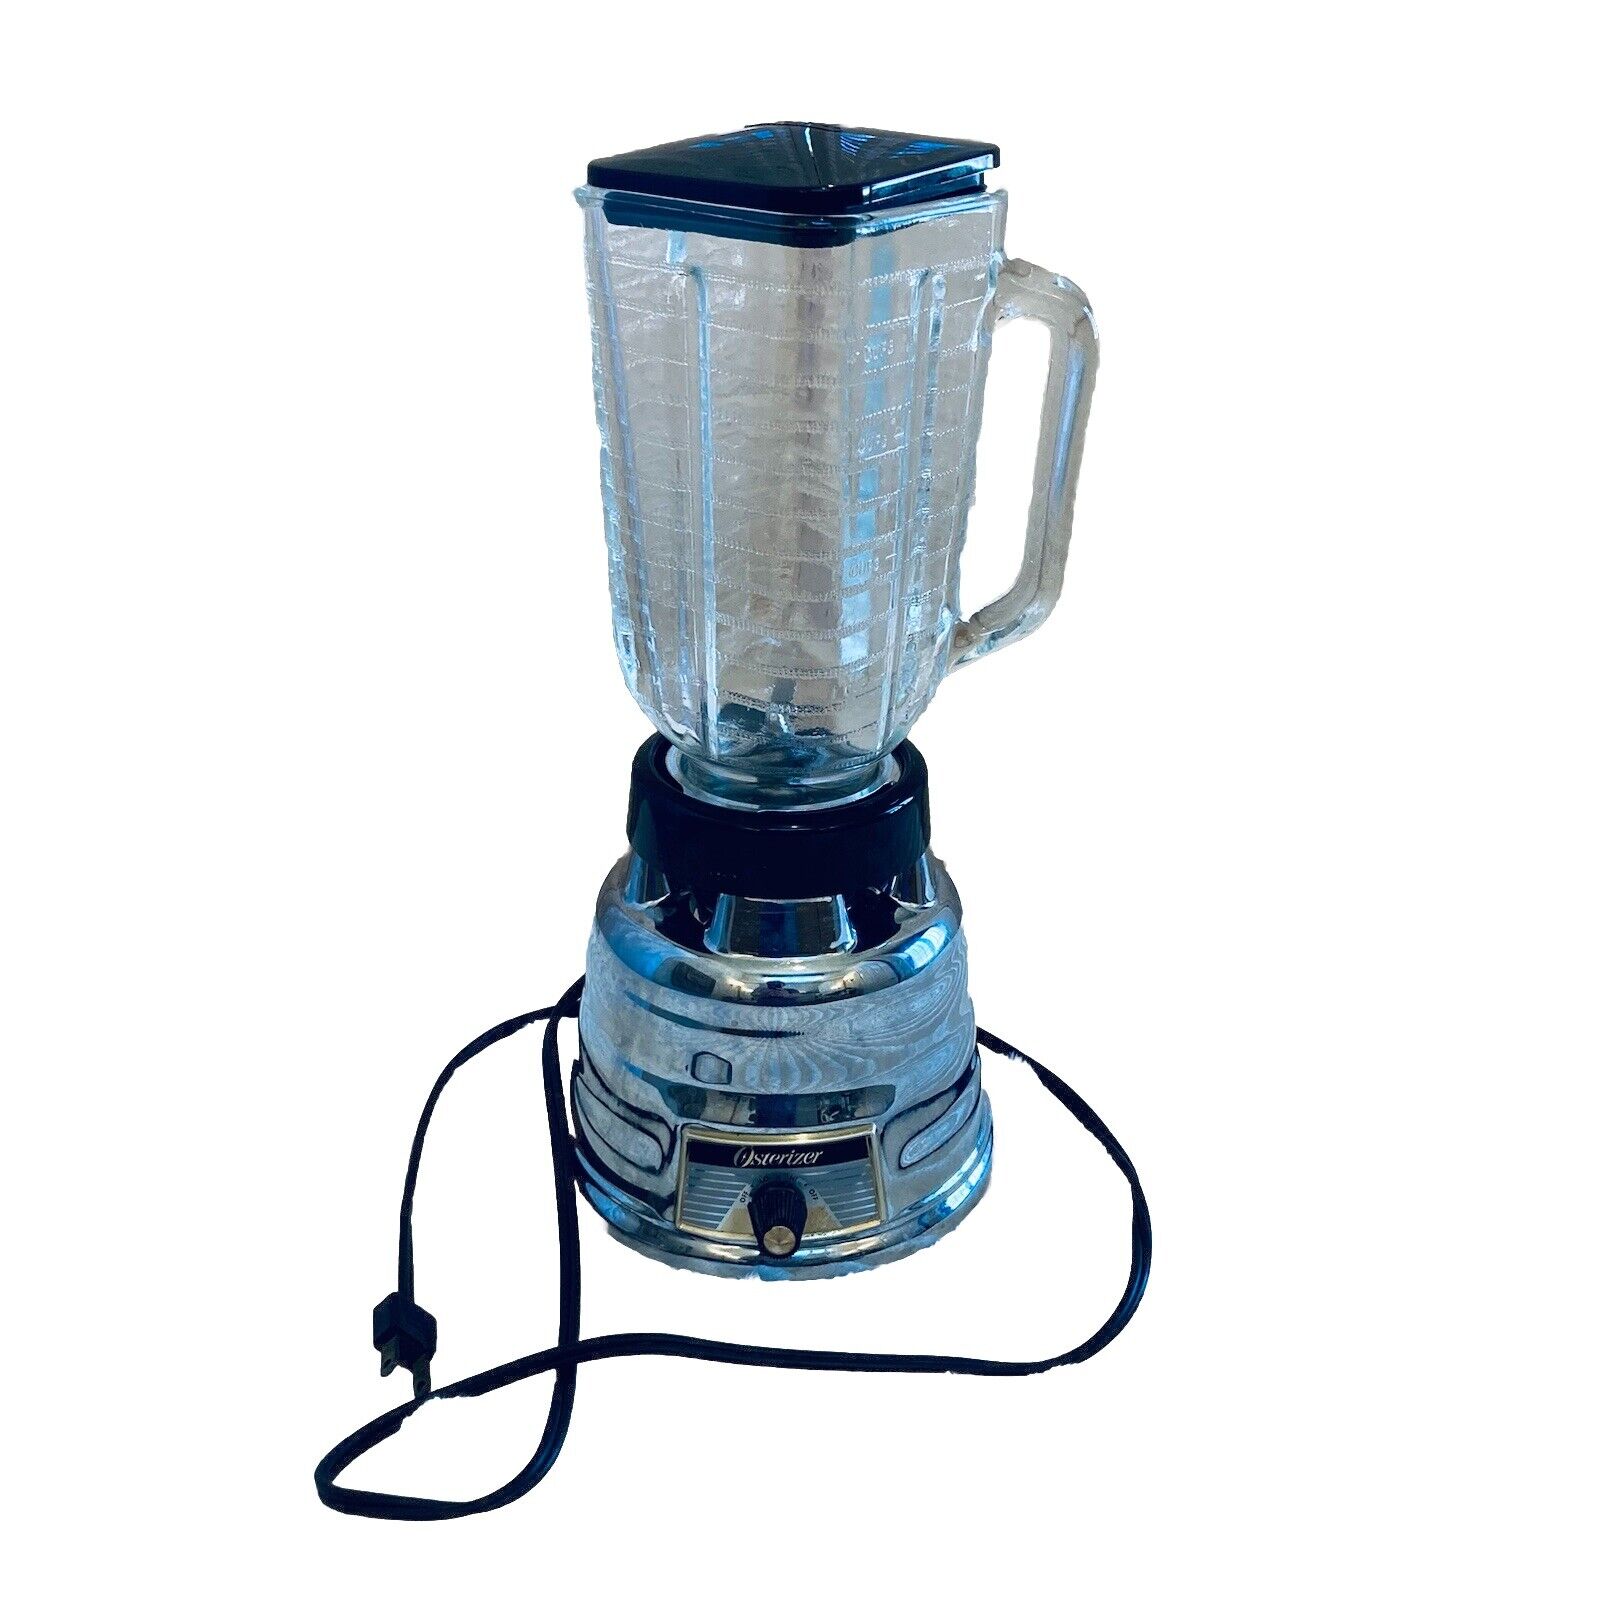 Vintage Osterizer Blender Beehive Chrome Model 235 Glass Jar 4-cup Lid